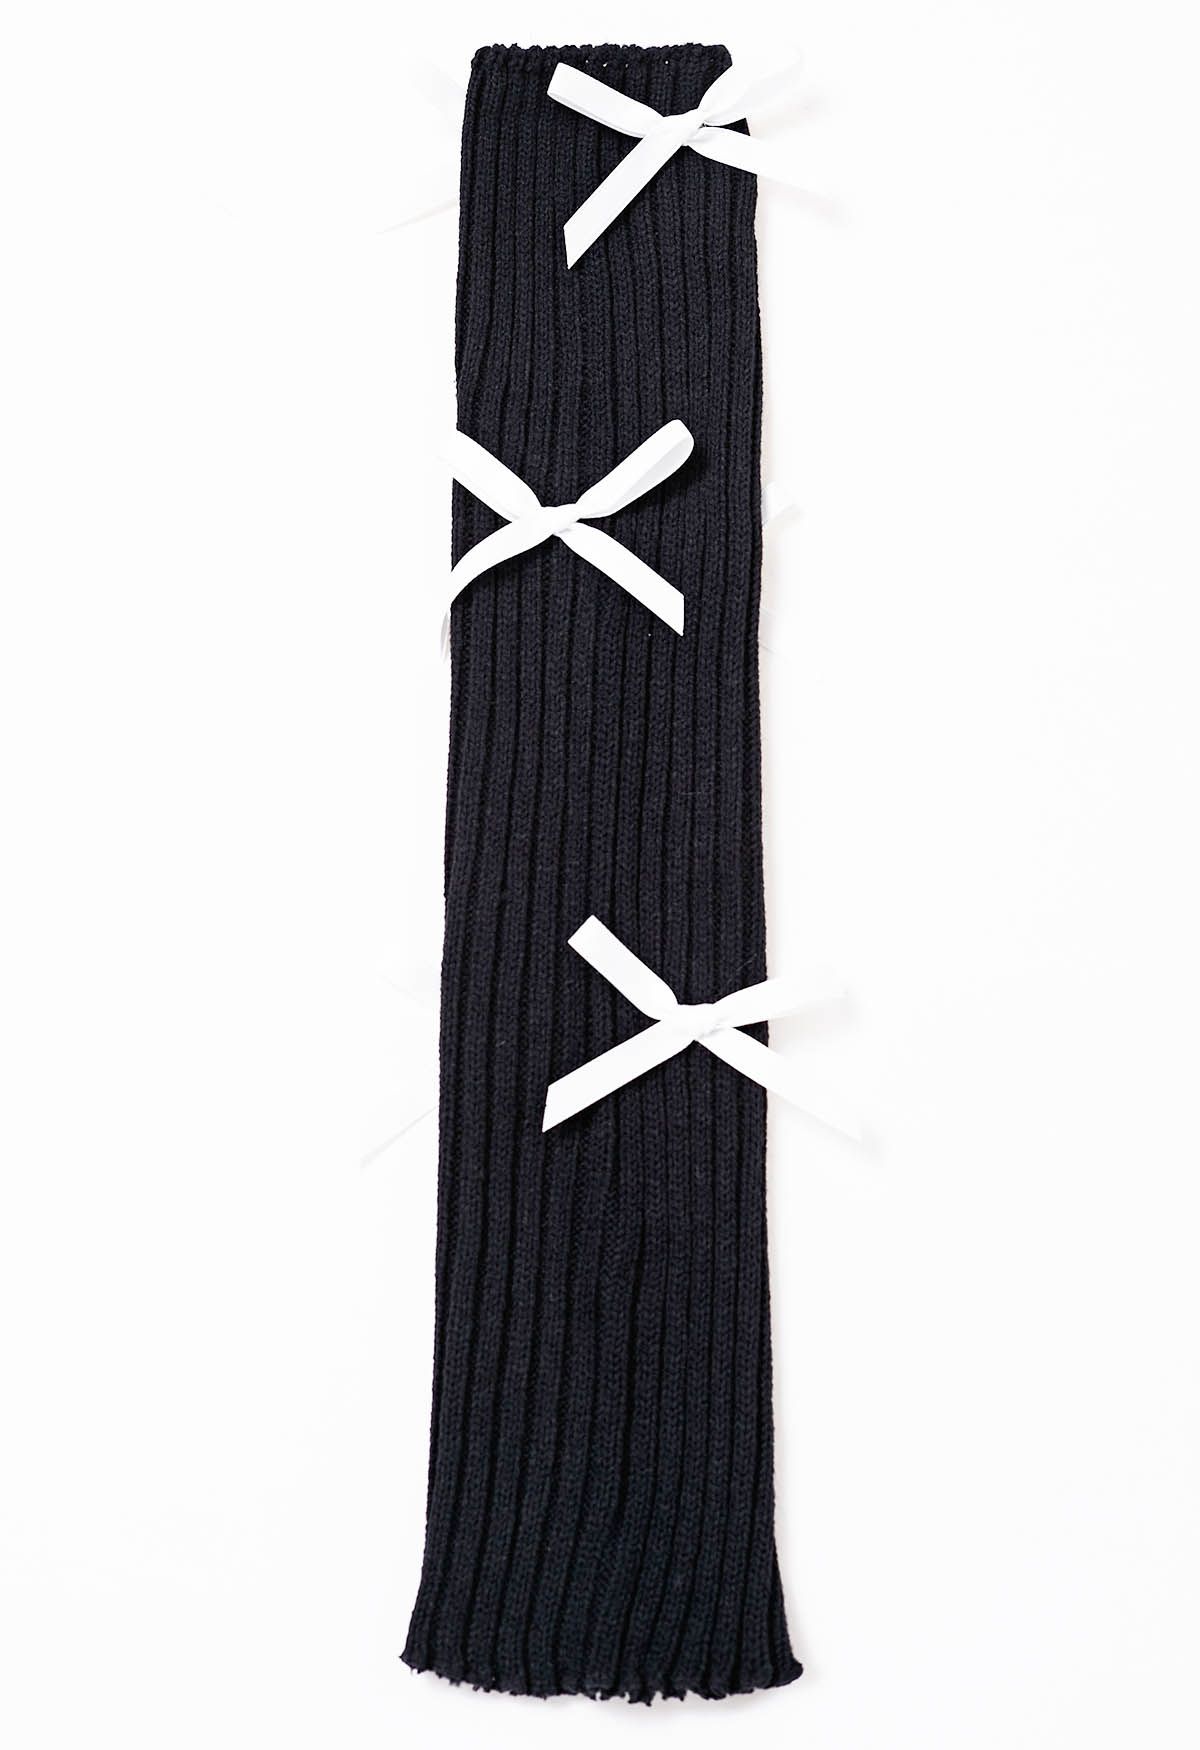 Bowknot Decor Knit Leg Warmers in Black